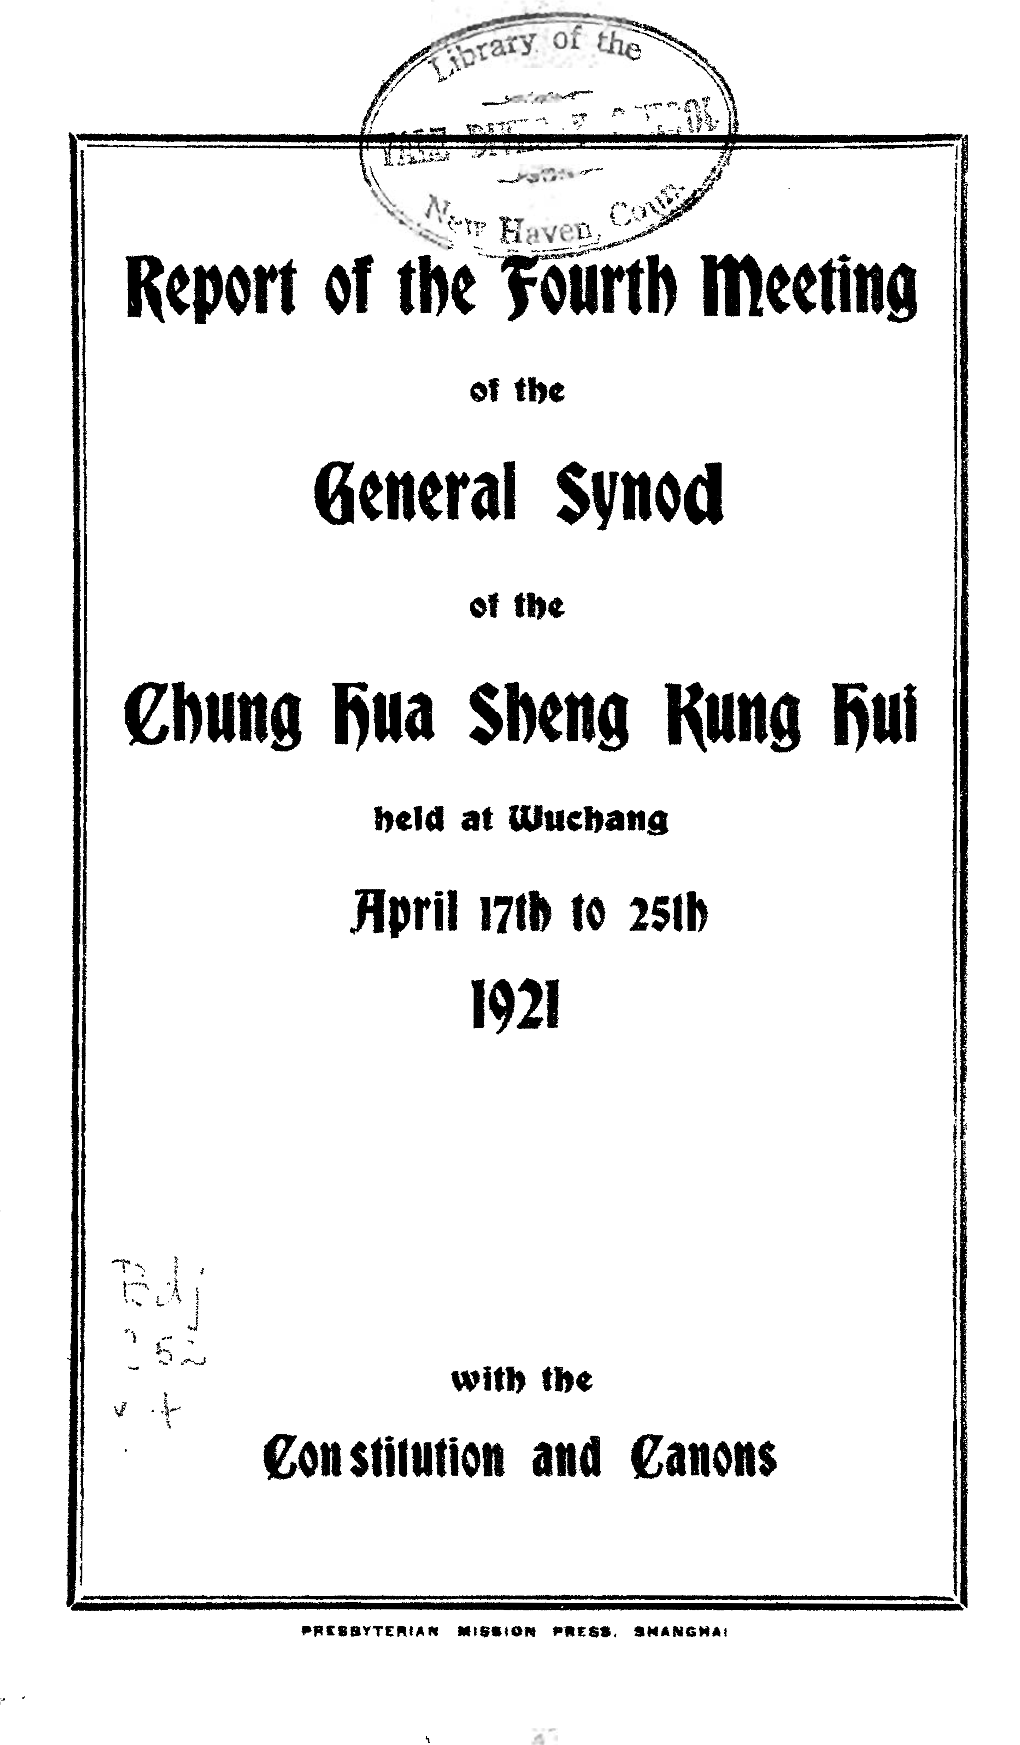 Chung Hua Sheng Kung Hui